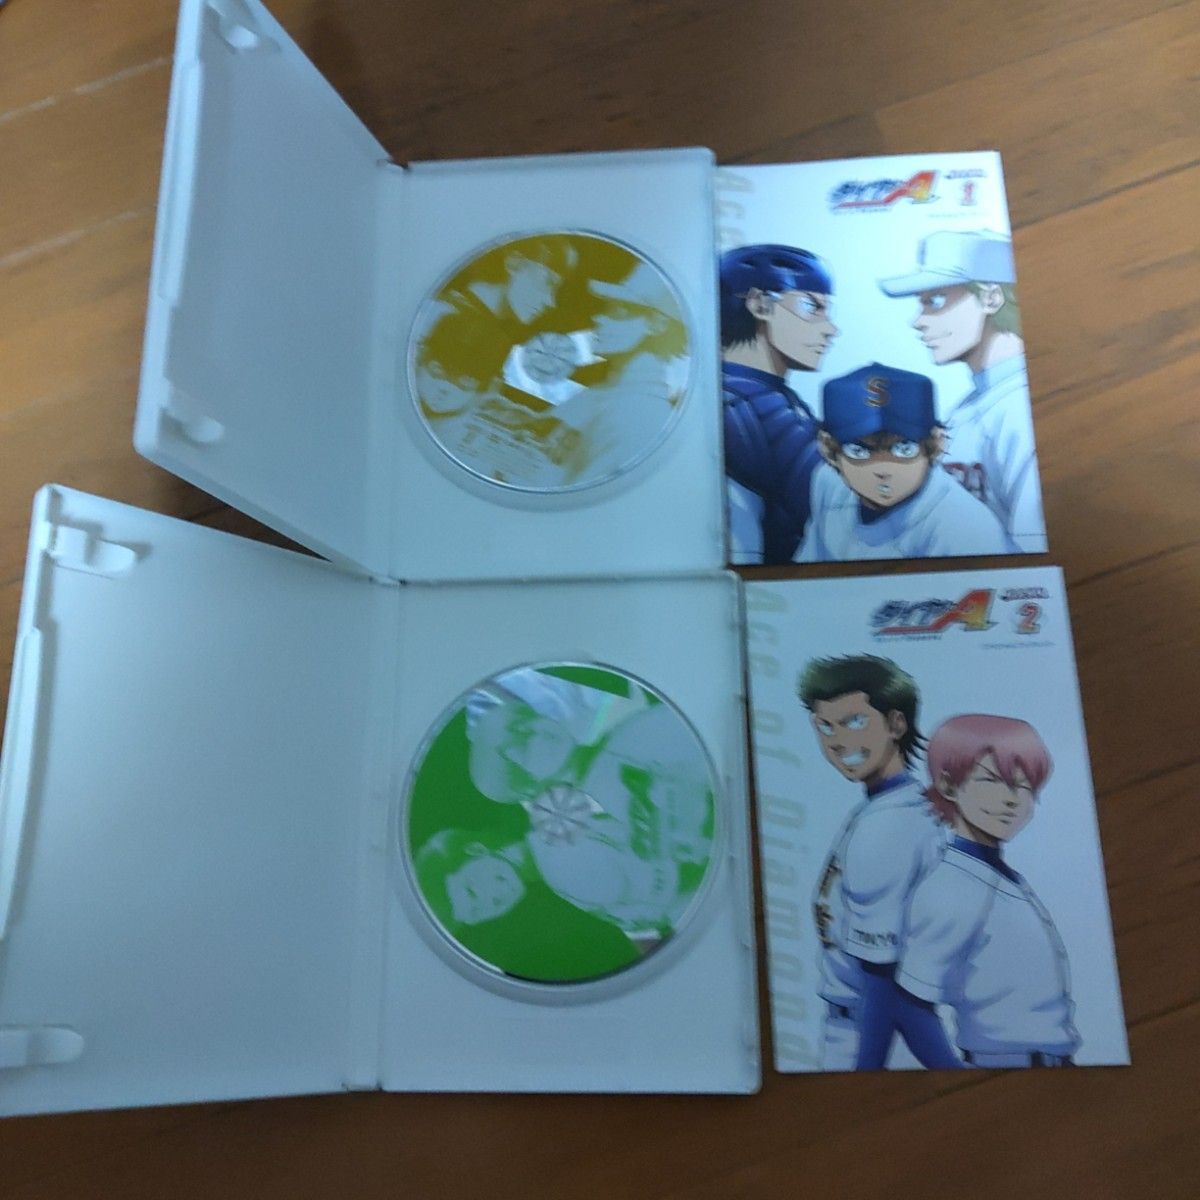 ダイヤのA 稲実戦編 Vol.1から6  DVD  収納ボックス付き